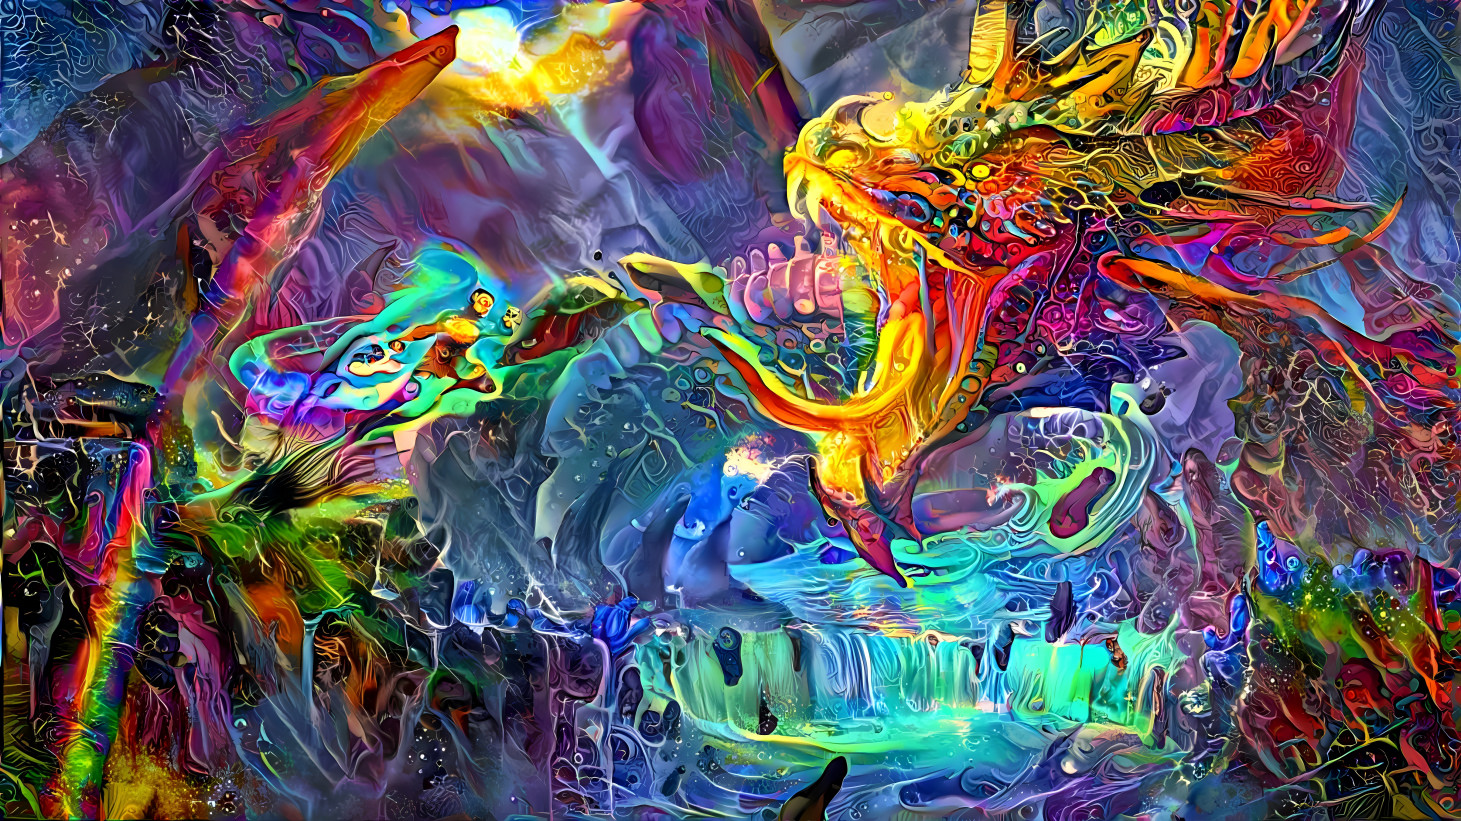 Psychedelic Dragon vs, Warrior